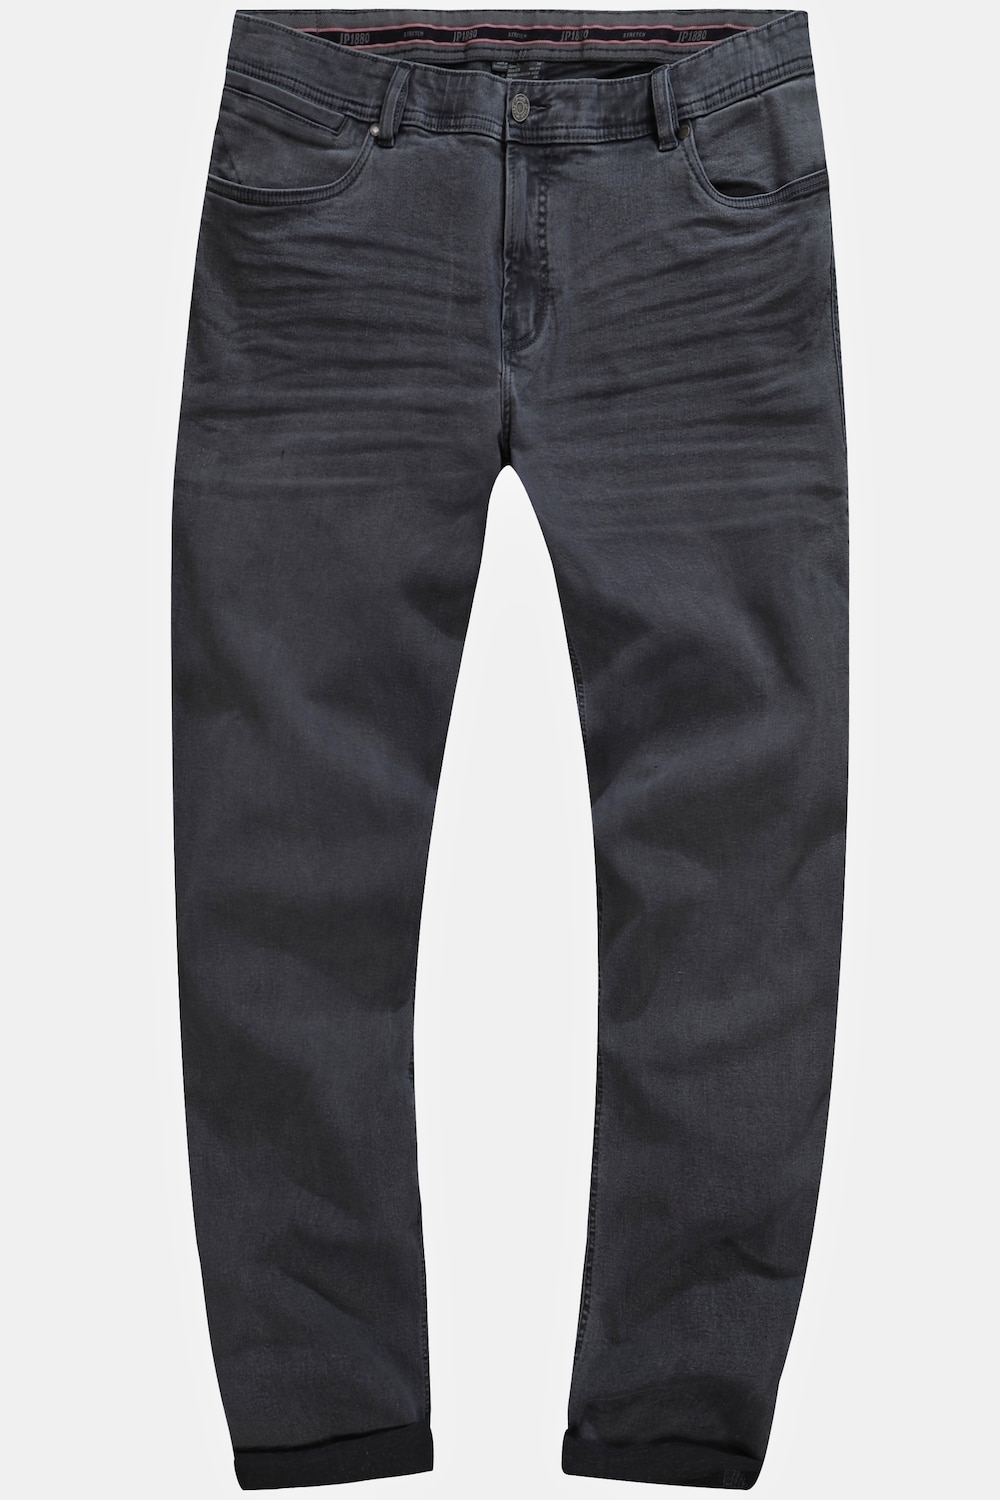 Grote Maten Jeans, Heren, grijs, Maat: 66, Katoen, JP1880